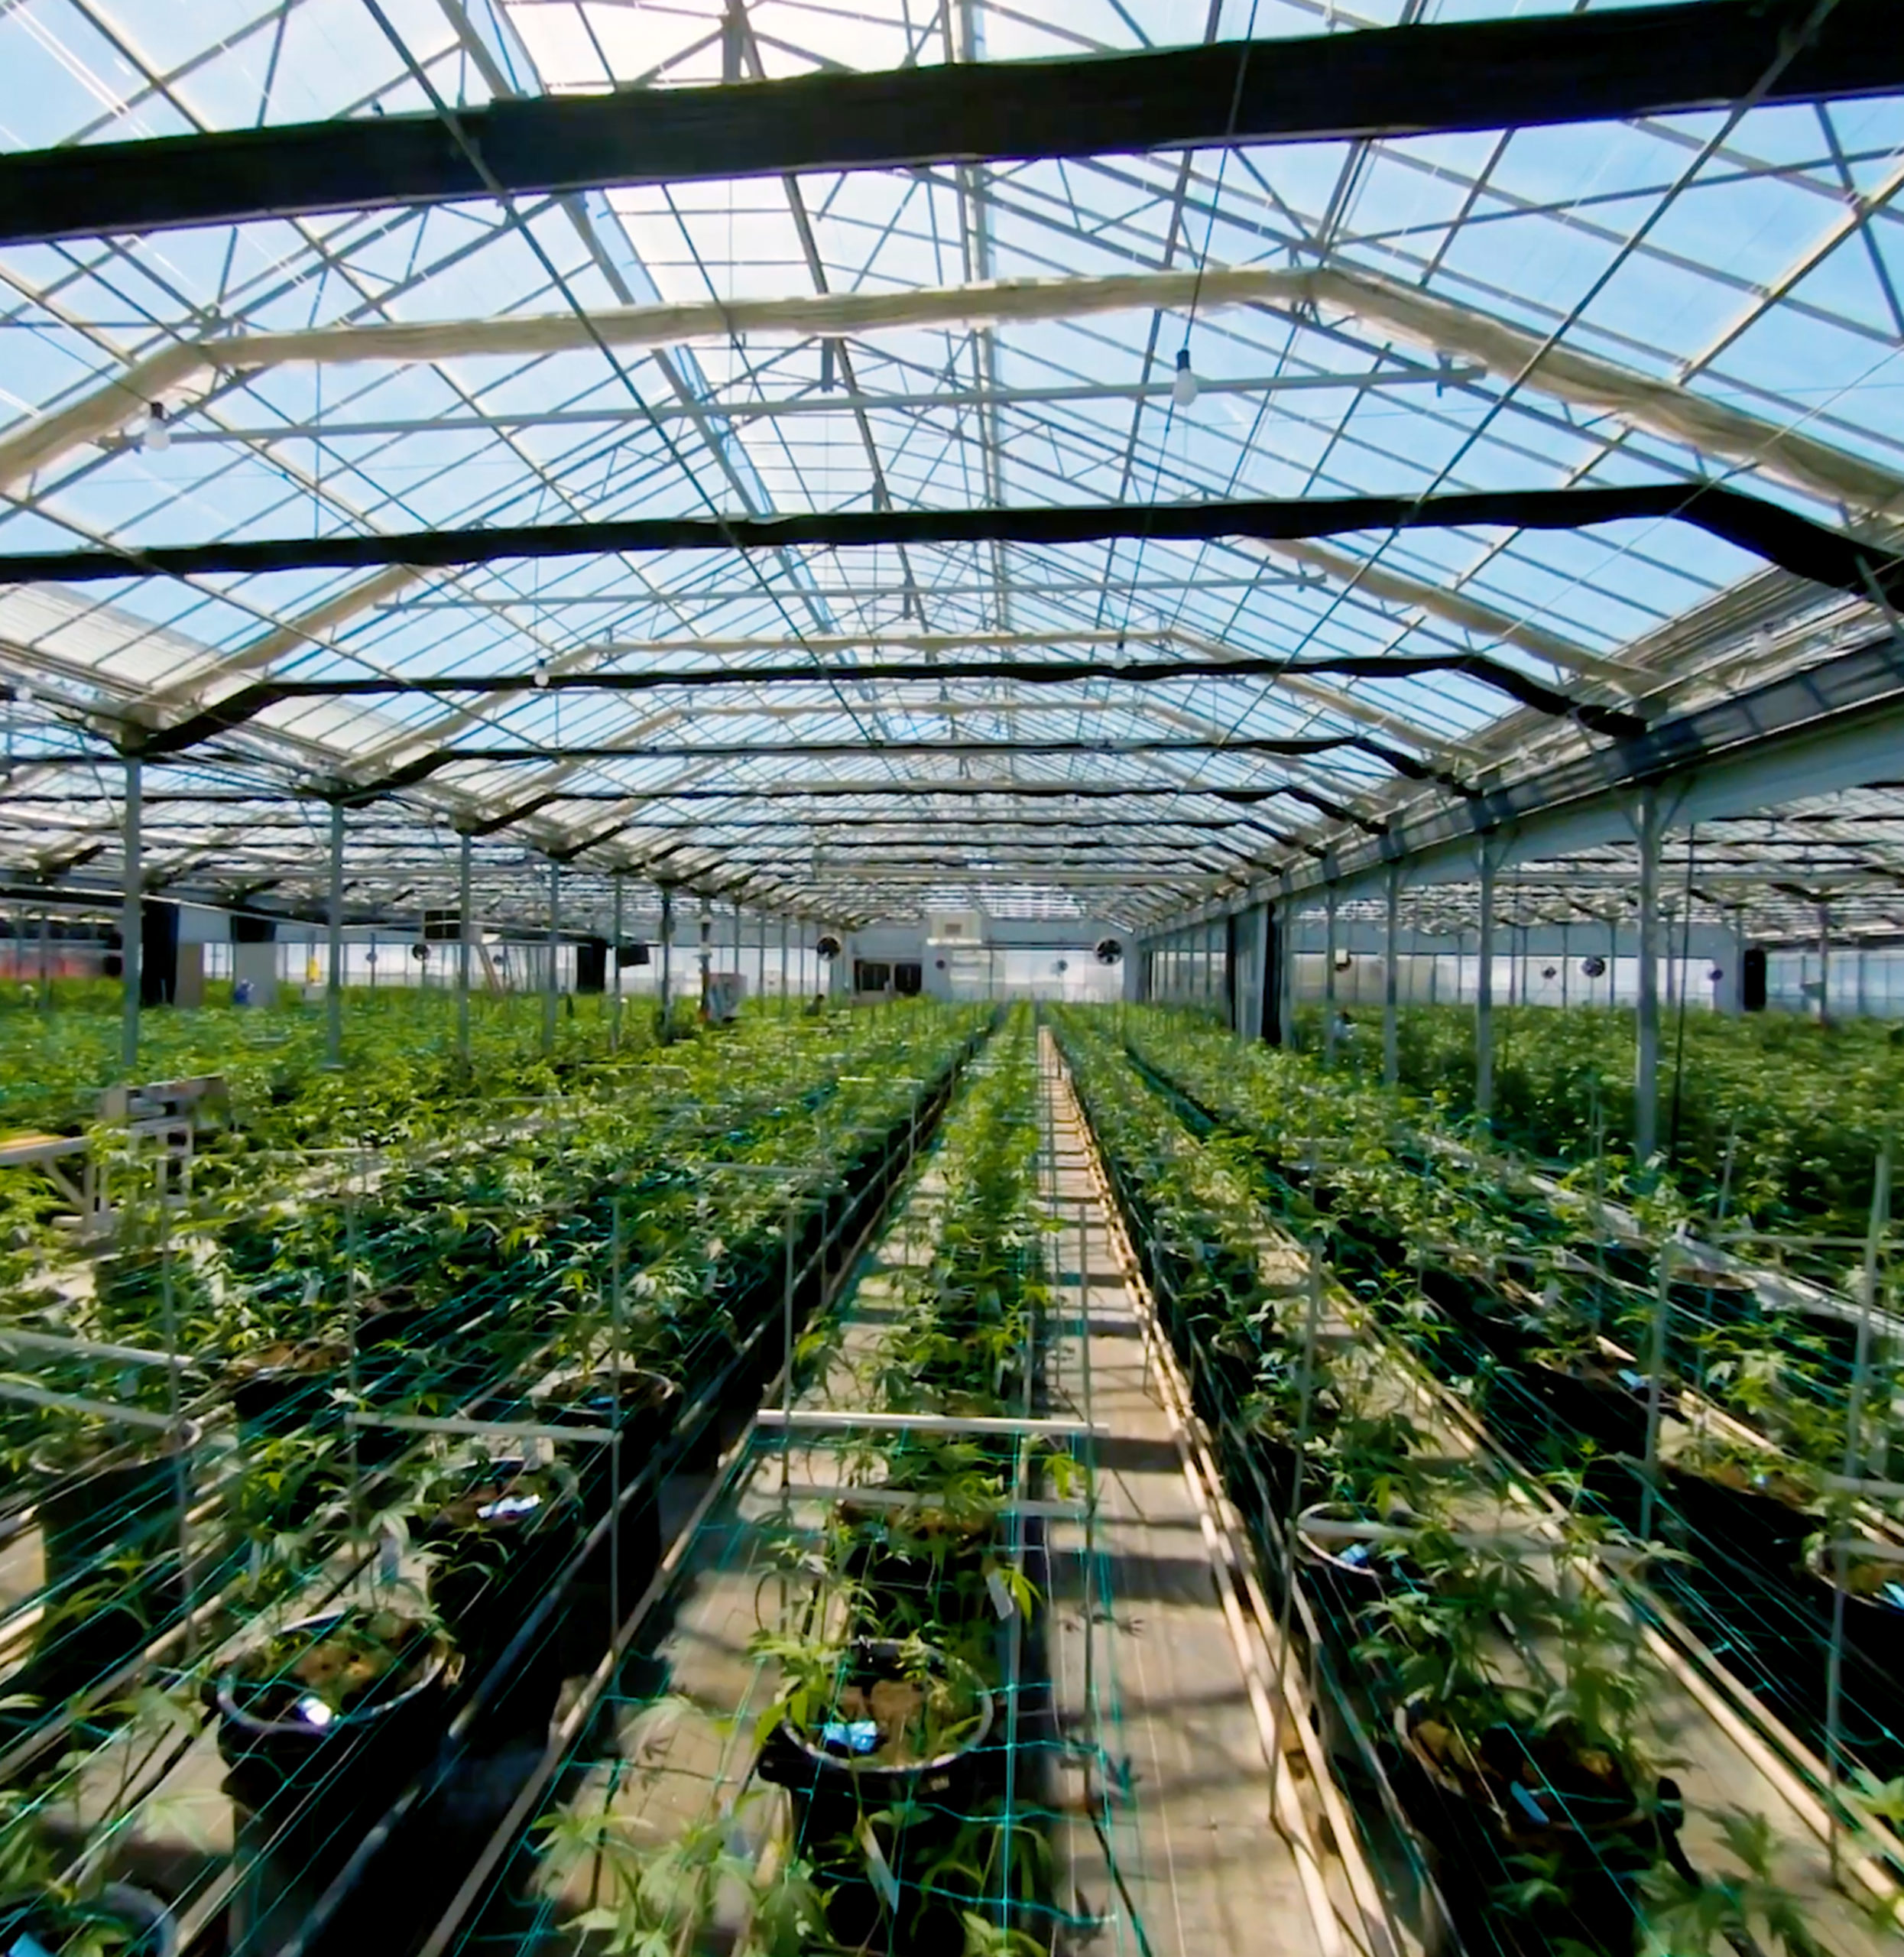 Βρετανία: Η εταιρεία που βρήκε τον τρόπο να καλλιεργεί κάνναβη με μηδενικό αποτύπωμα άνθρακα